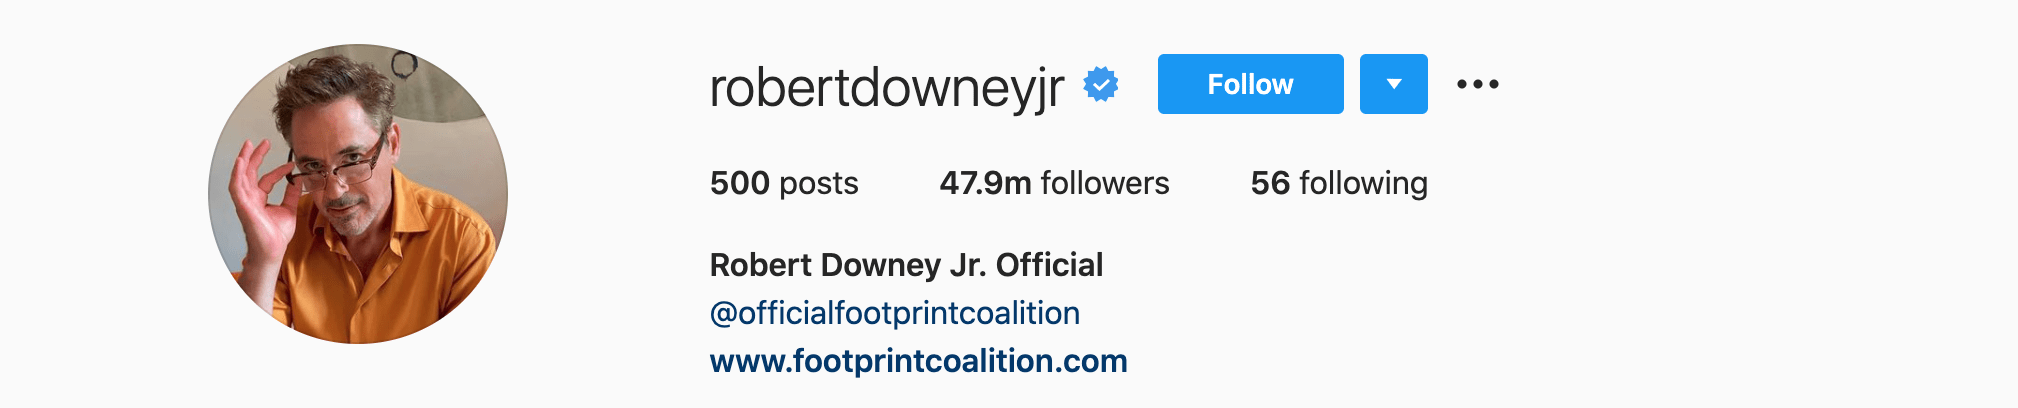 Top Instagram Influencers - ROBERT DOWNEY JR.